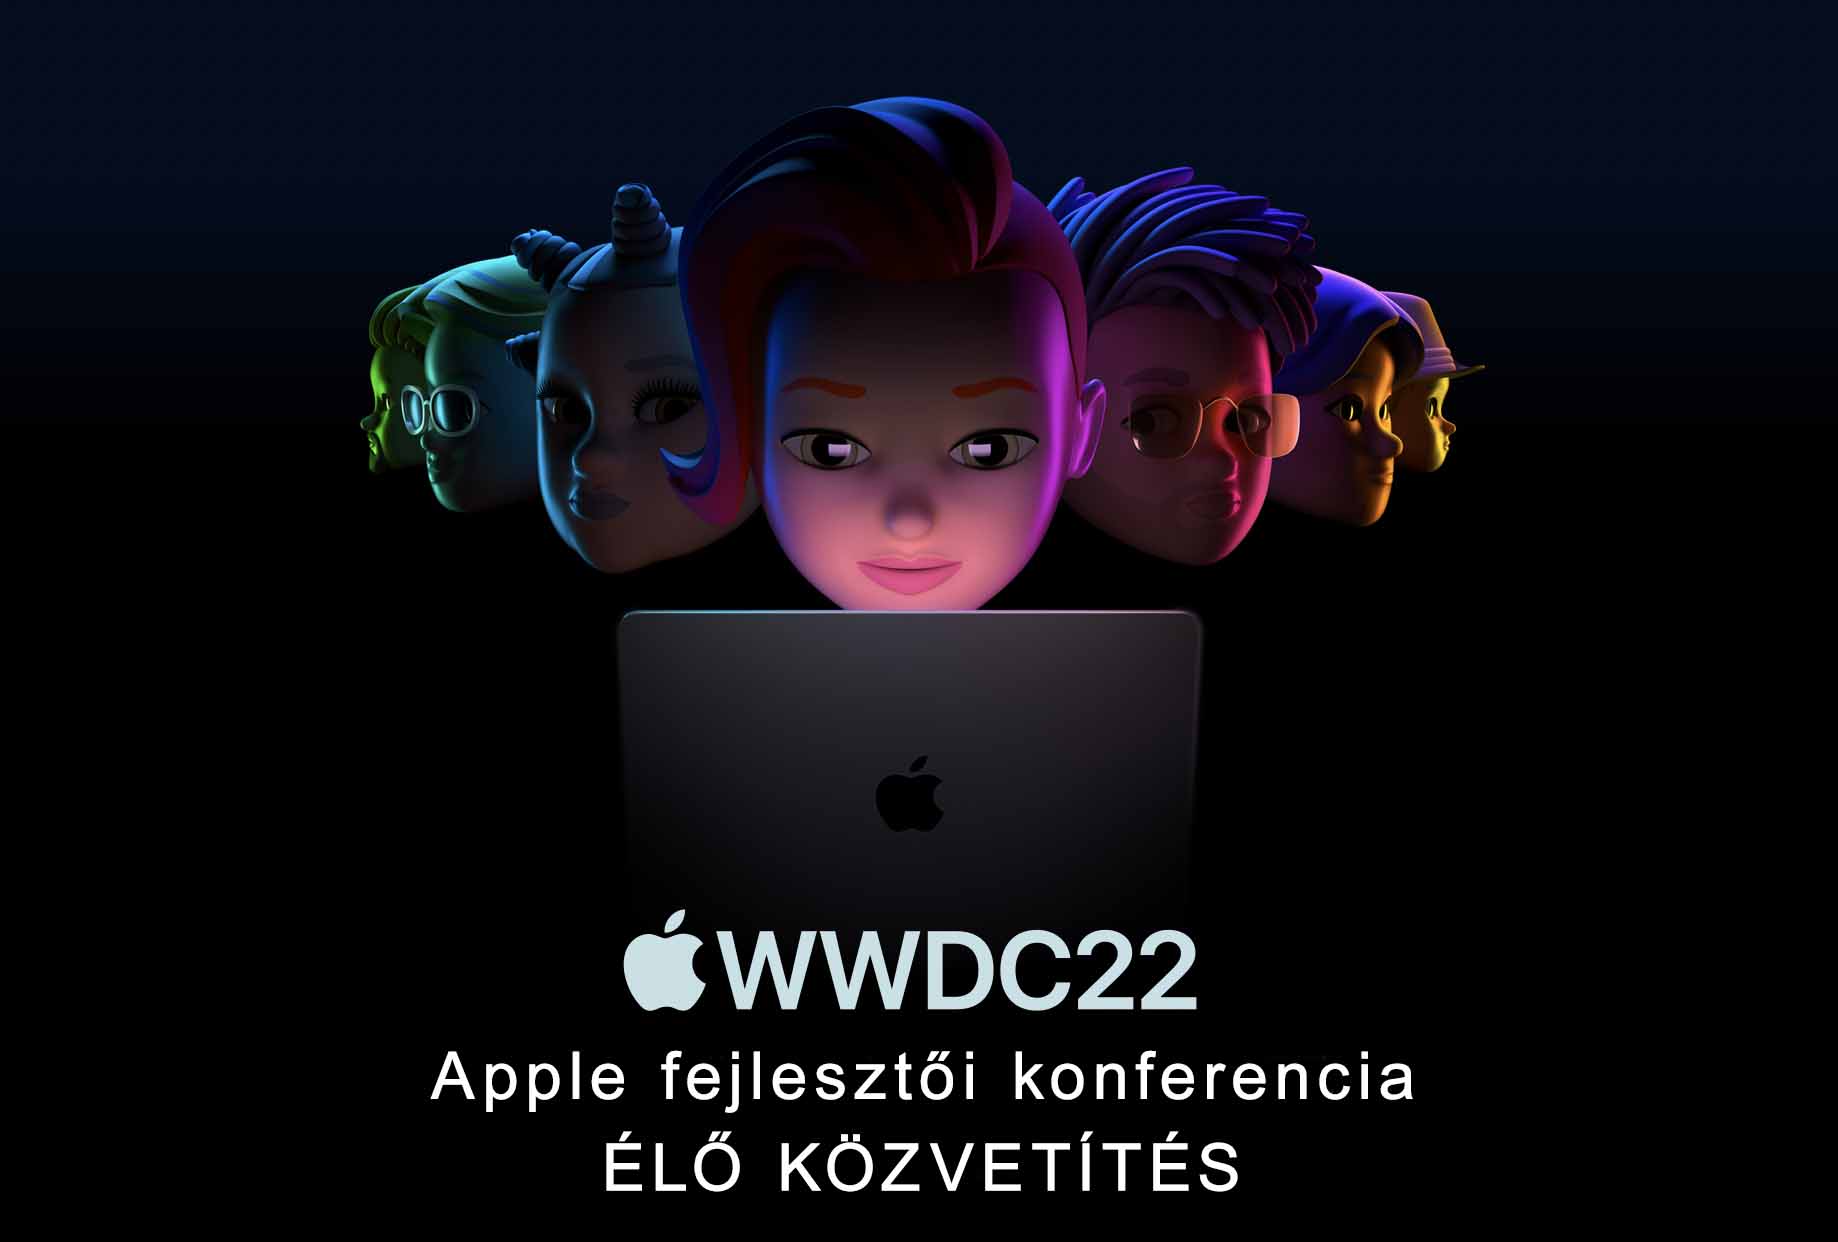 WWDC22 ÉLŐ közvetítés a HasznaltAlmán